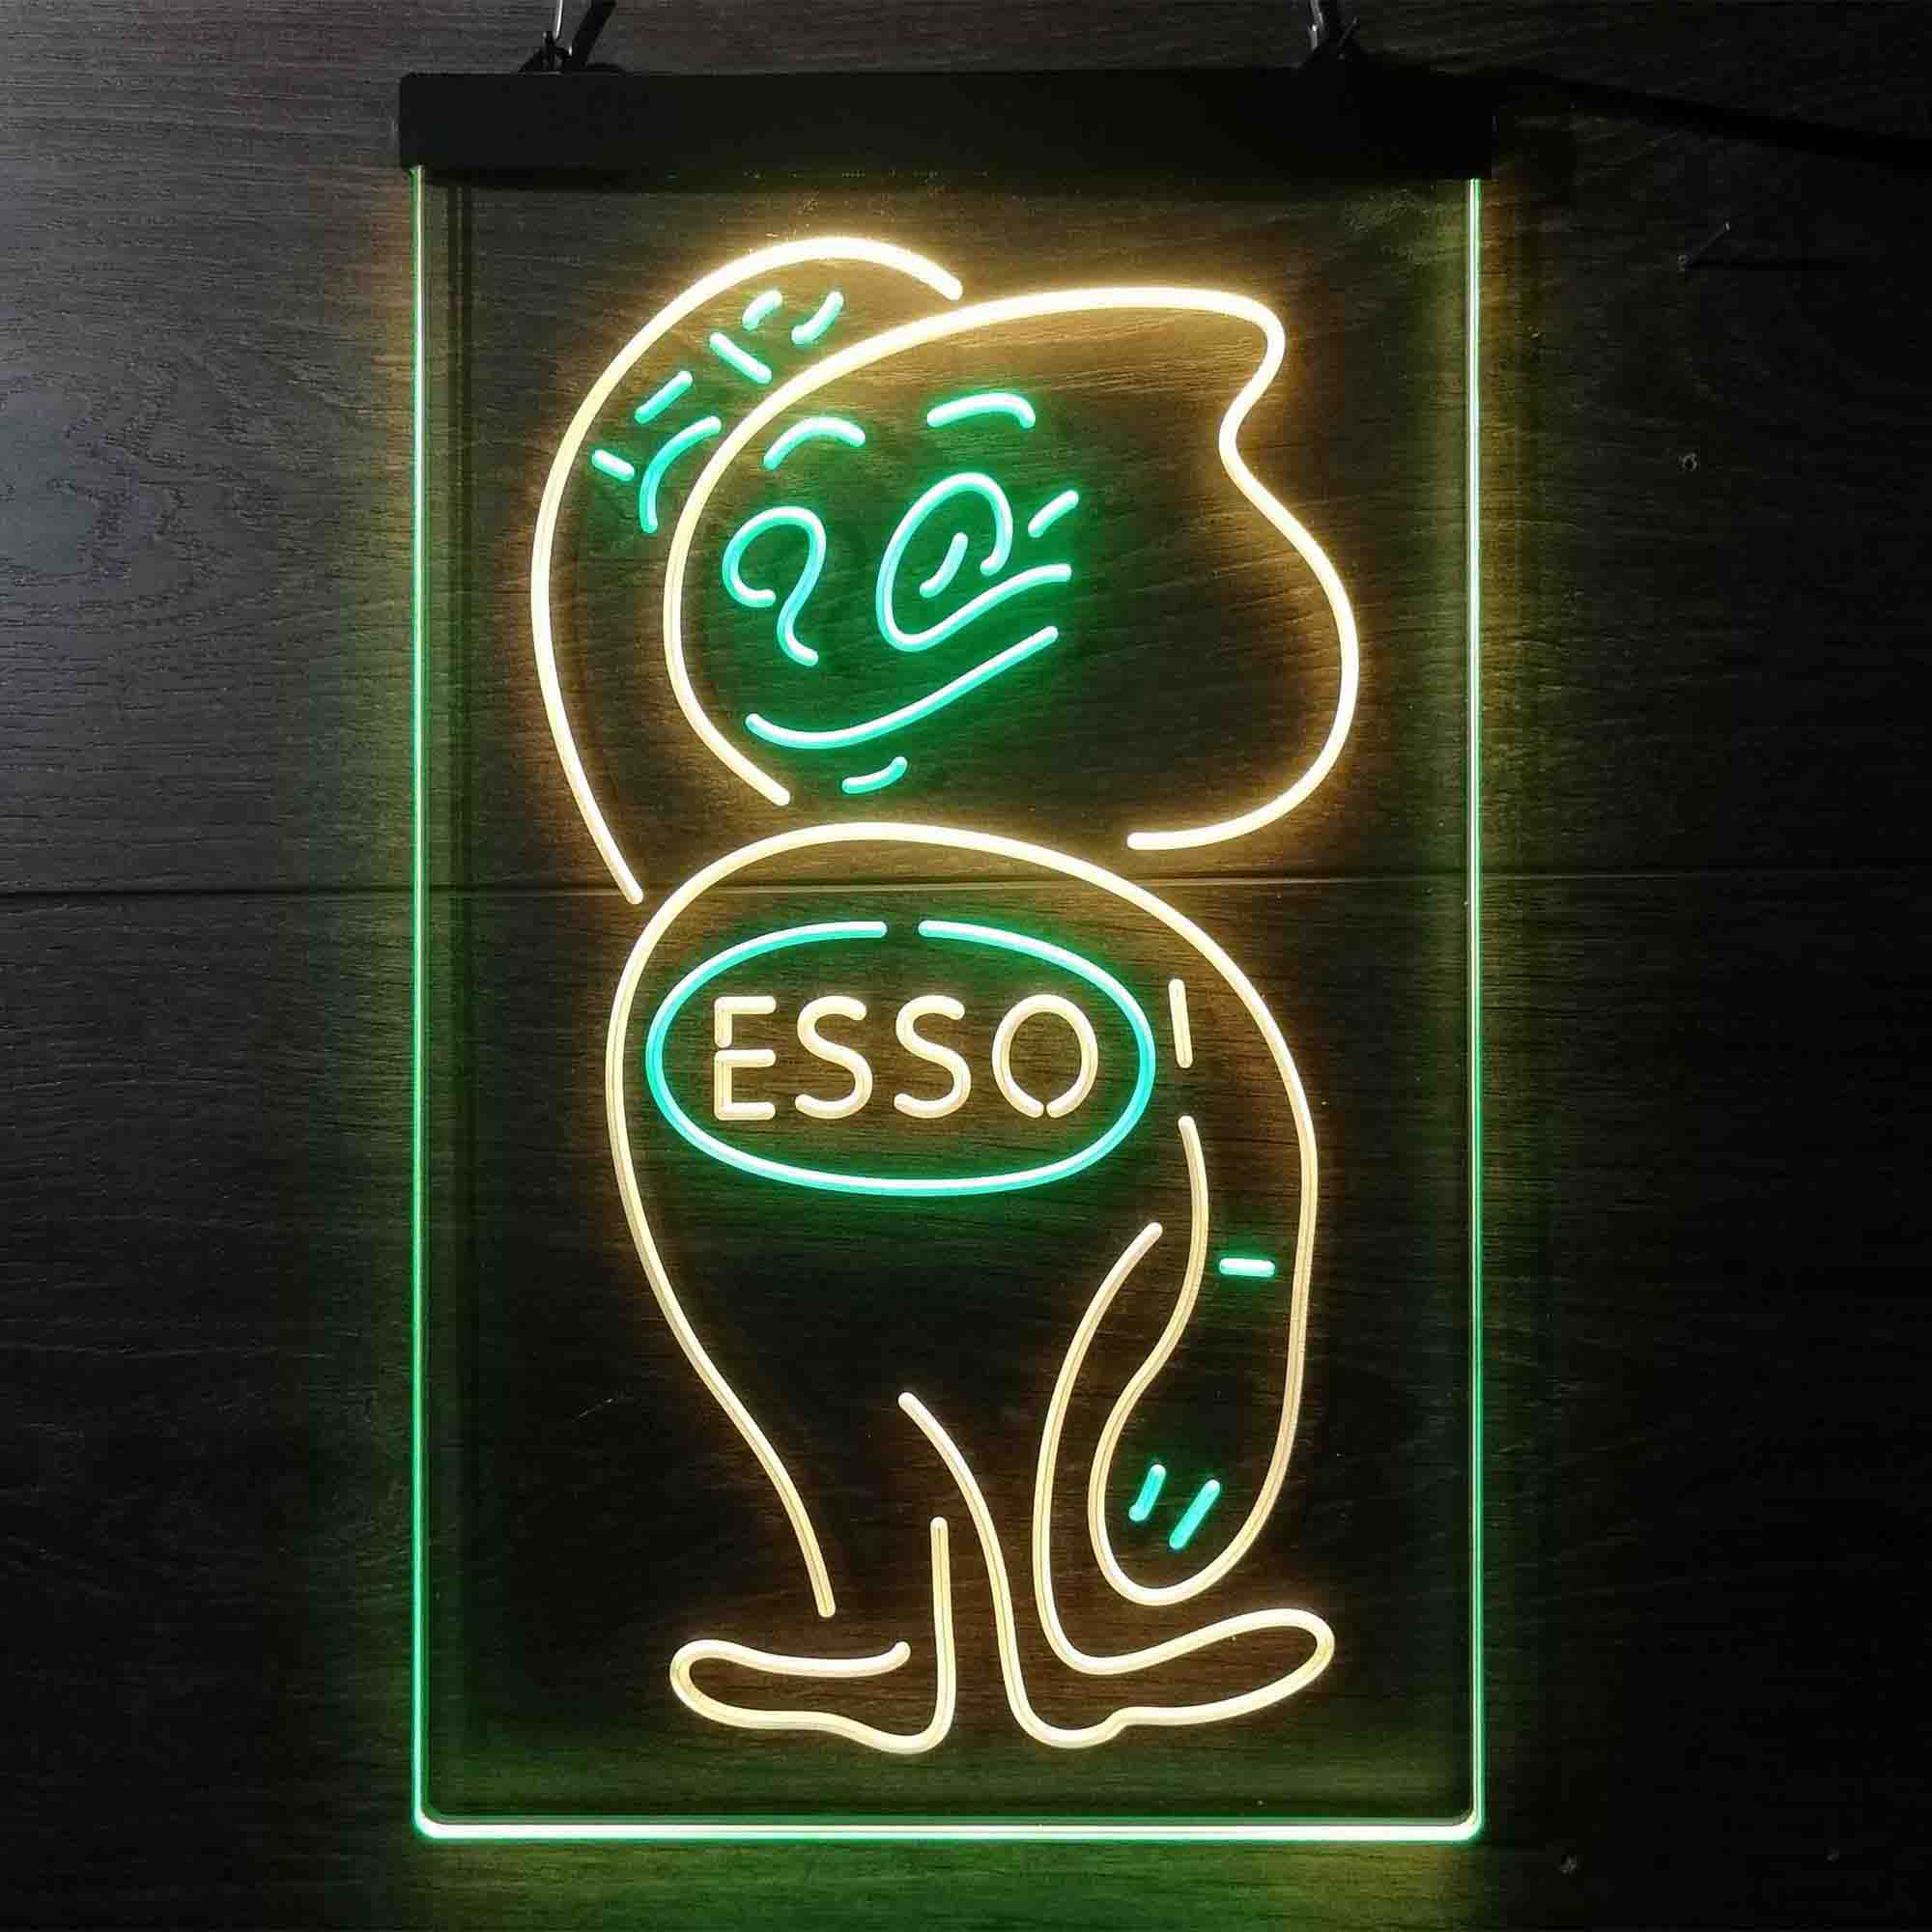 Esso Mascot Oil Gasoline Neon-Like LED Sign